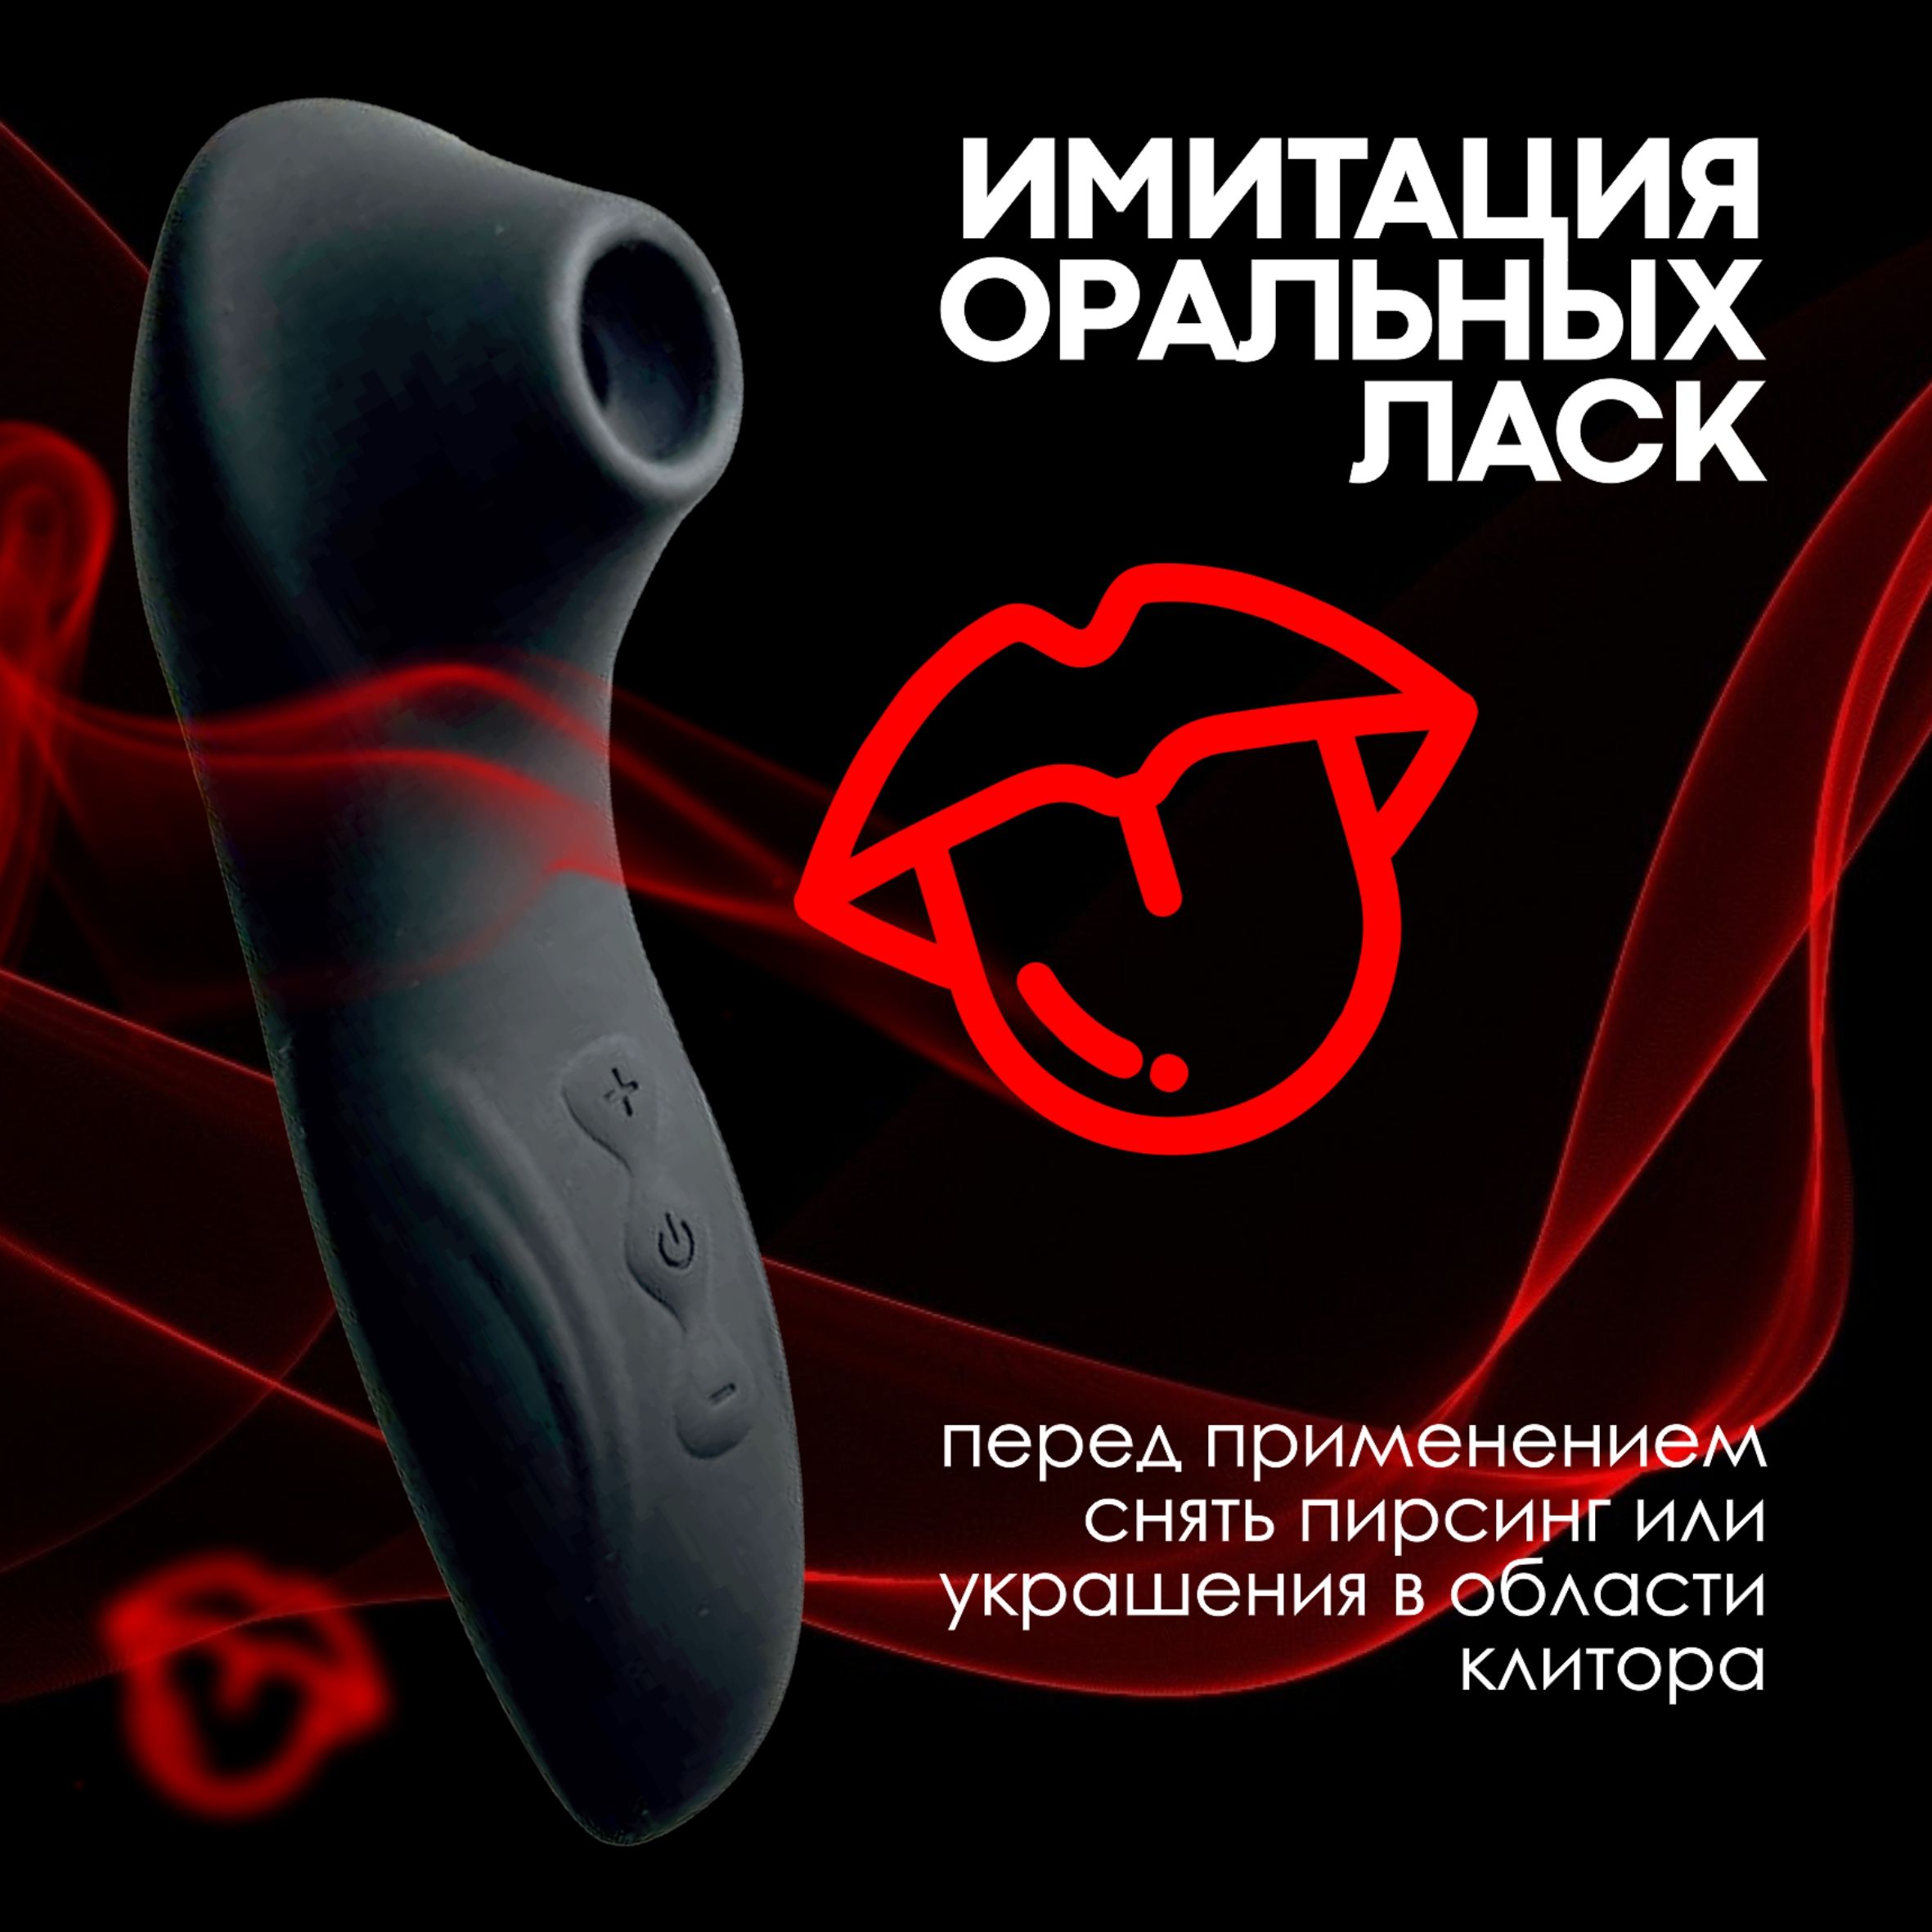 Удаление капюшона клитора стоимость операции, цены в Москве - Дека Клиника